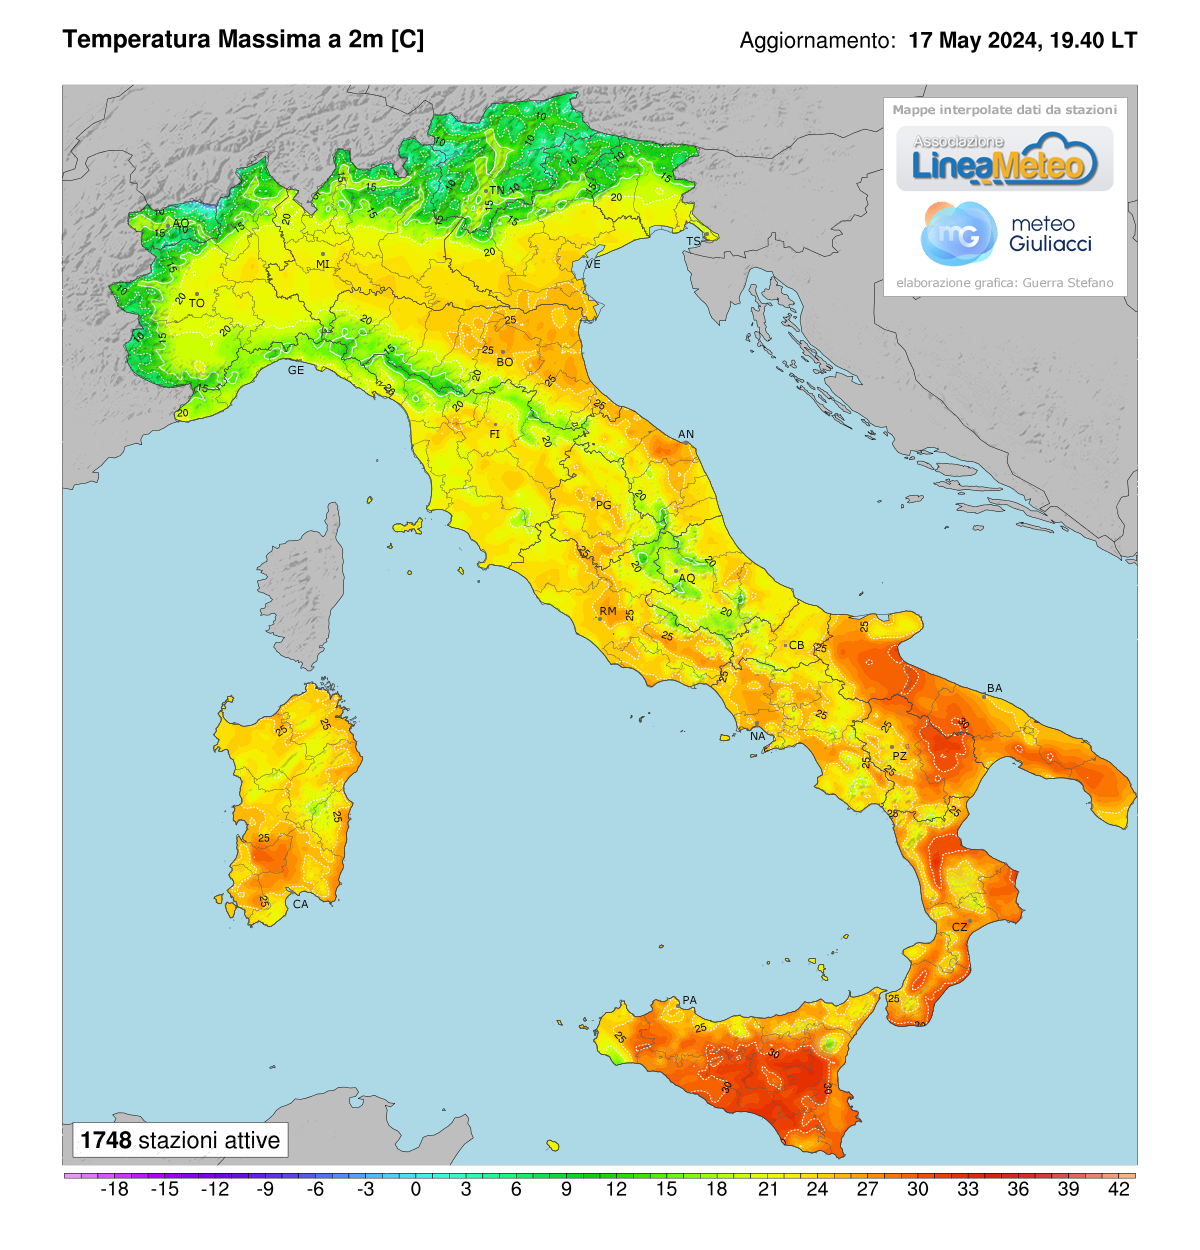 Temperature massime registrate oggi in Italia